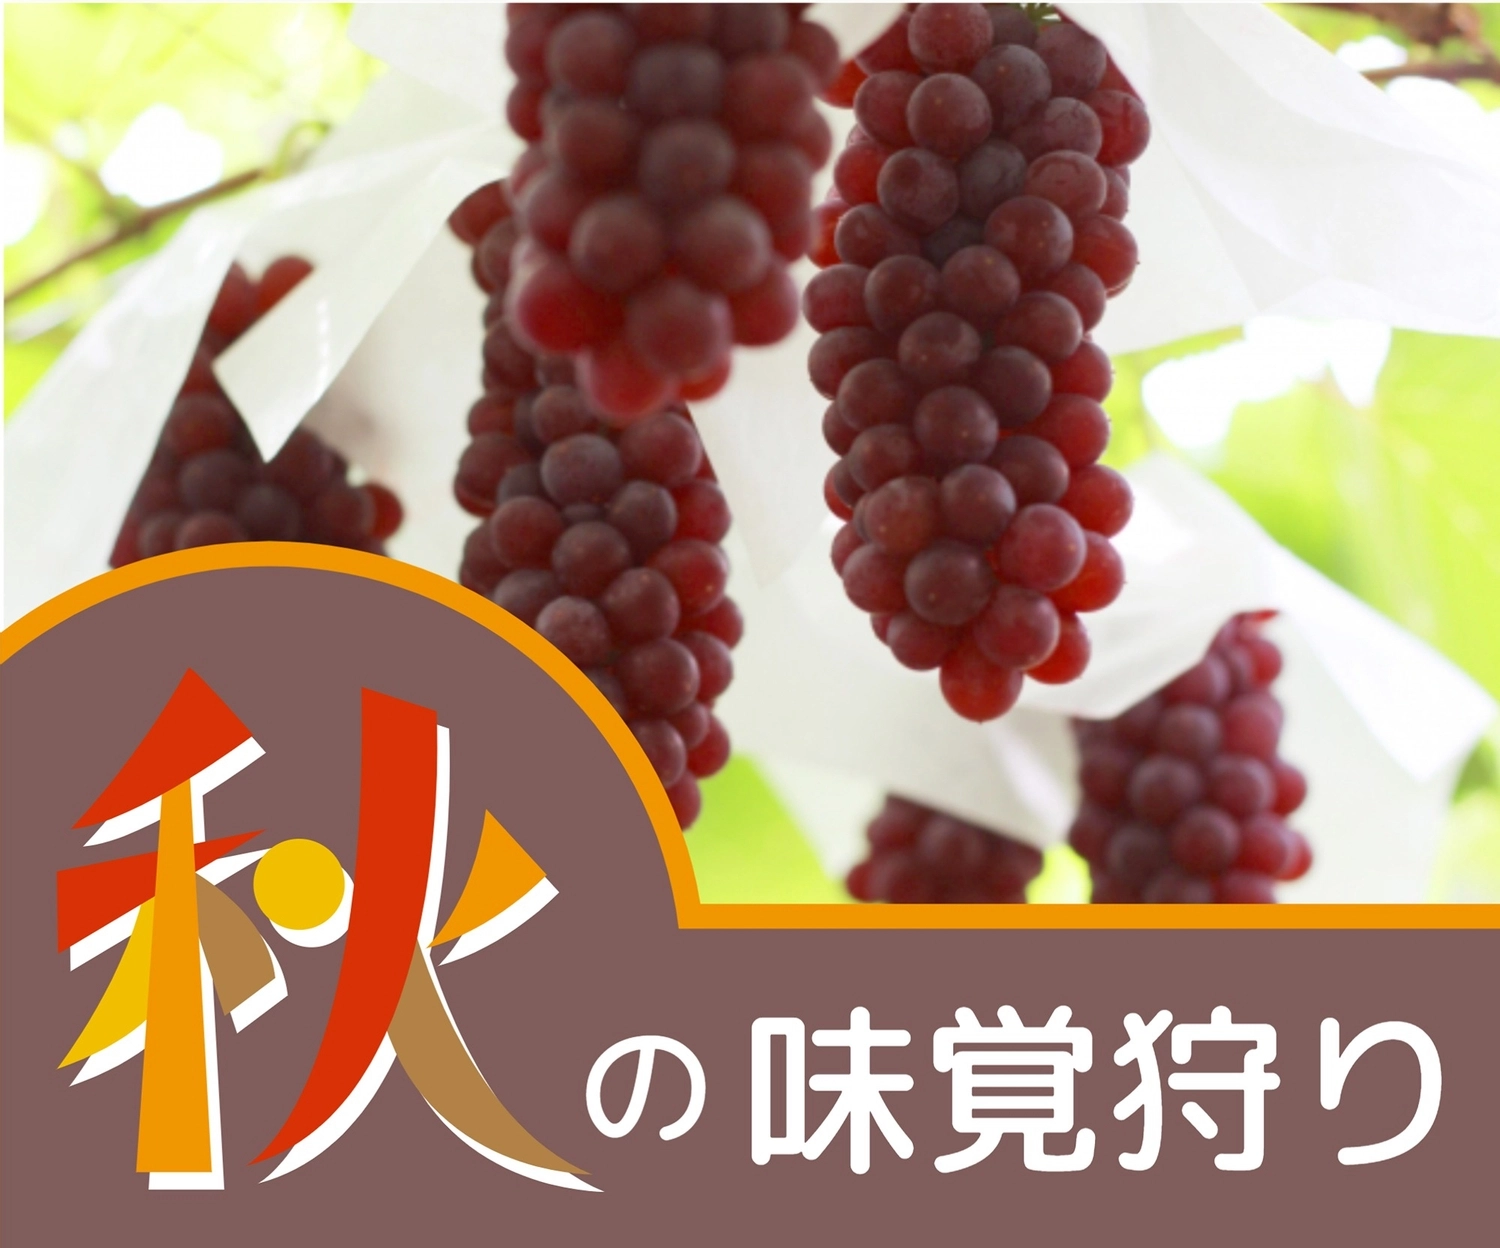 秋の味覚狩り（ぶどう写真）, đồn điền, hái trái cây, hái trái cây, banner mẫu